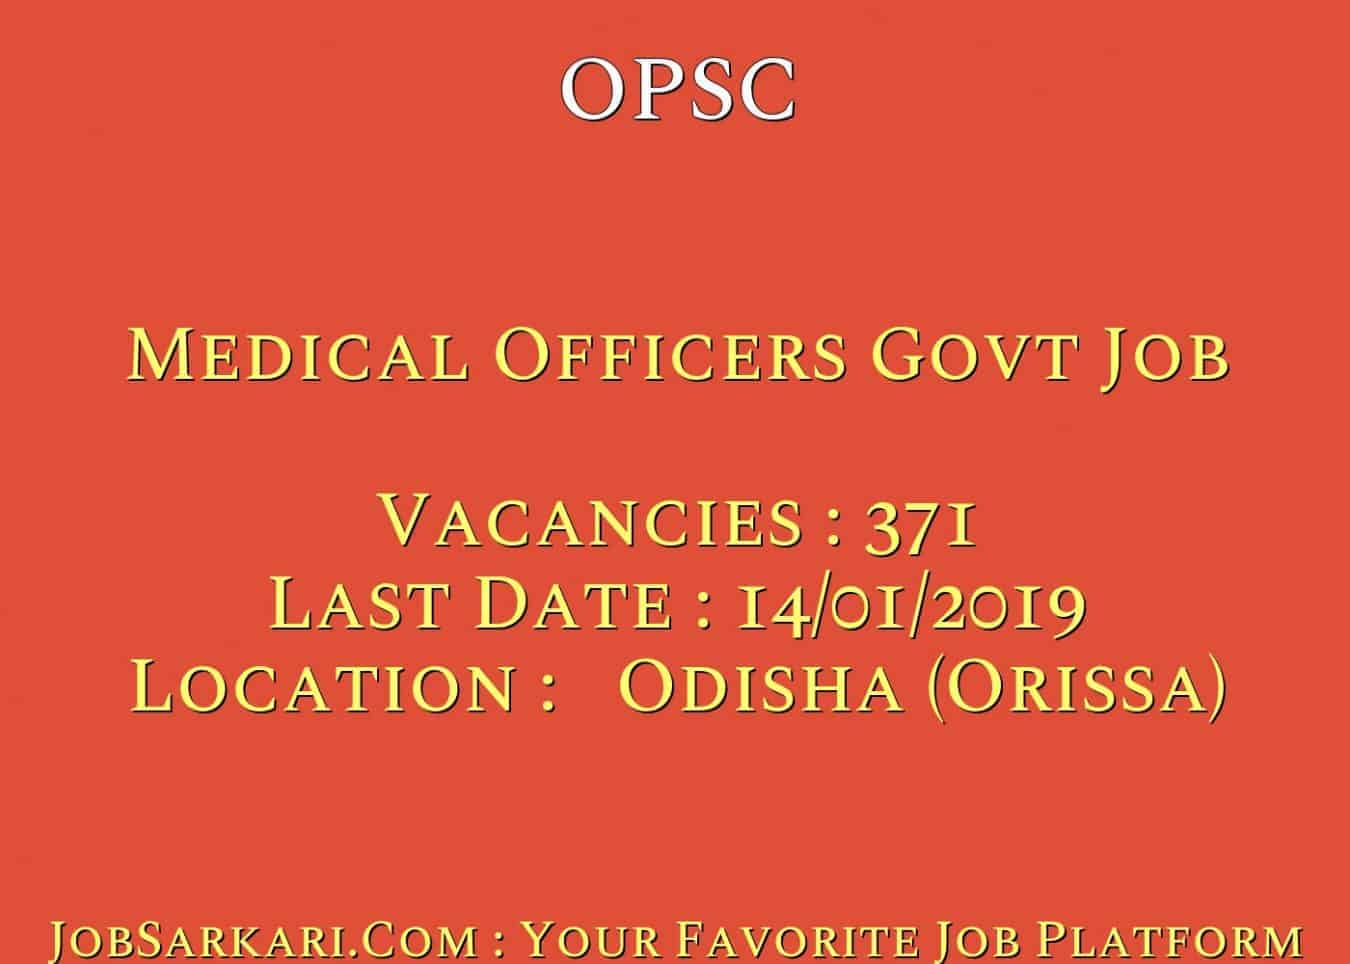 OPSC Recruitment 2018 For Medical Officers Govt Job